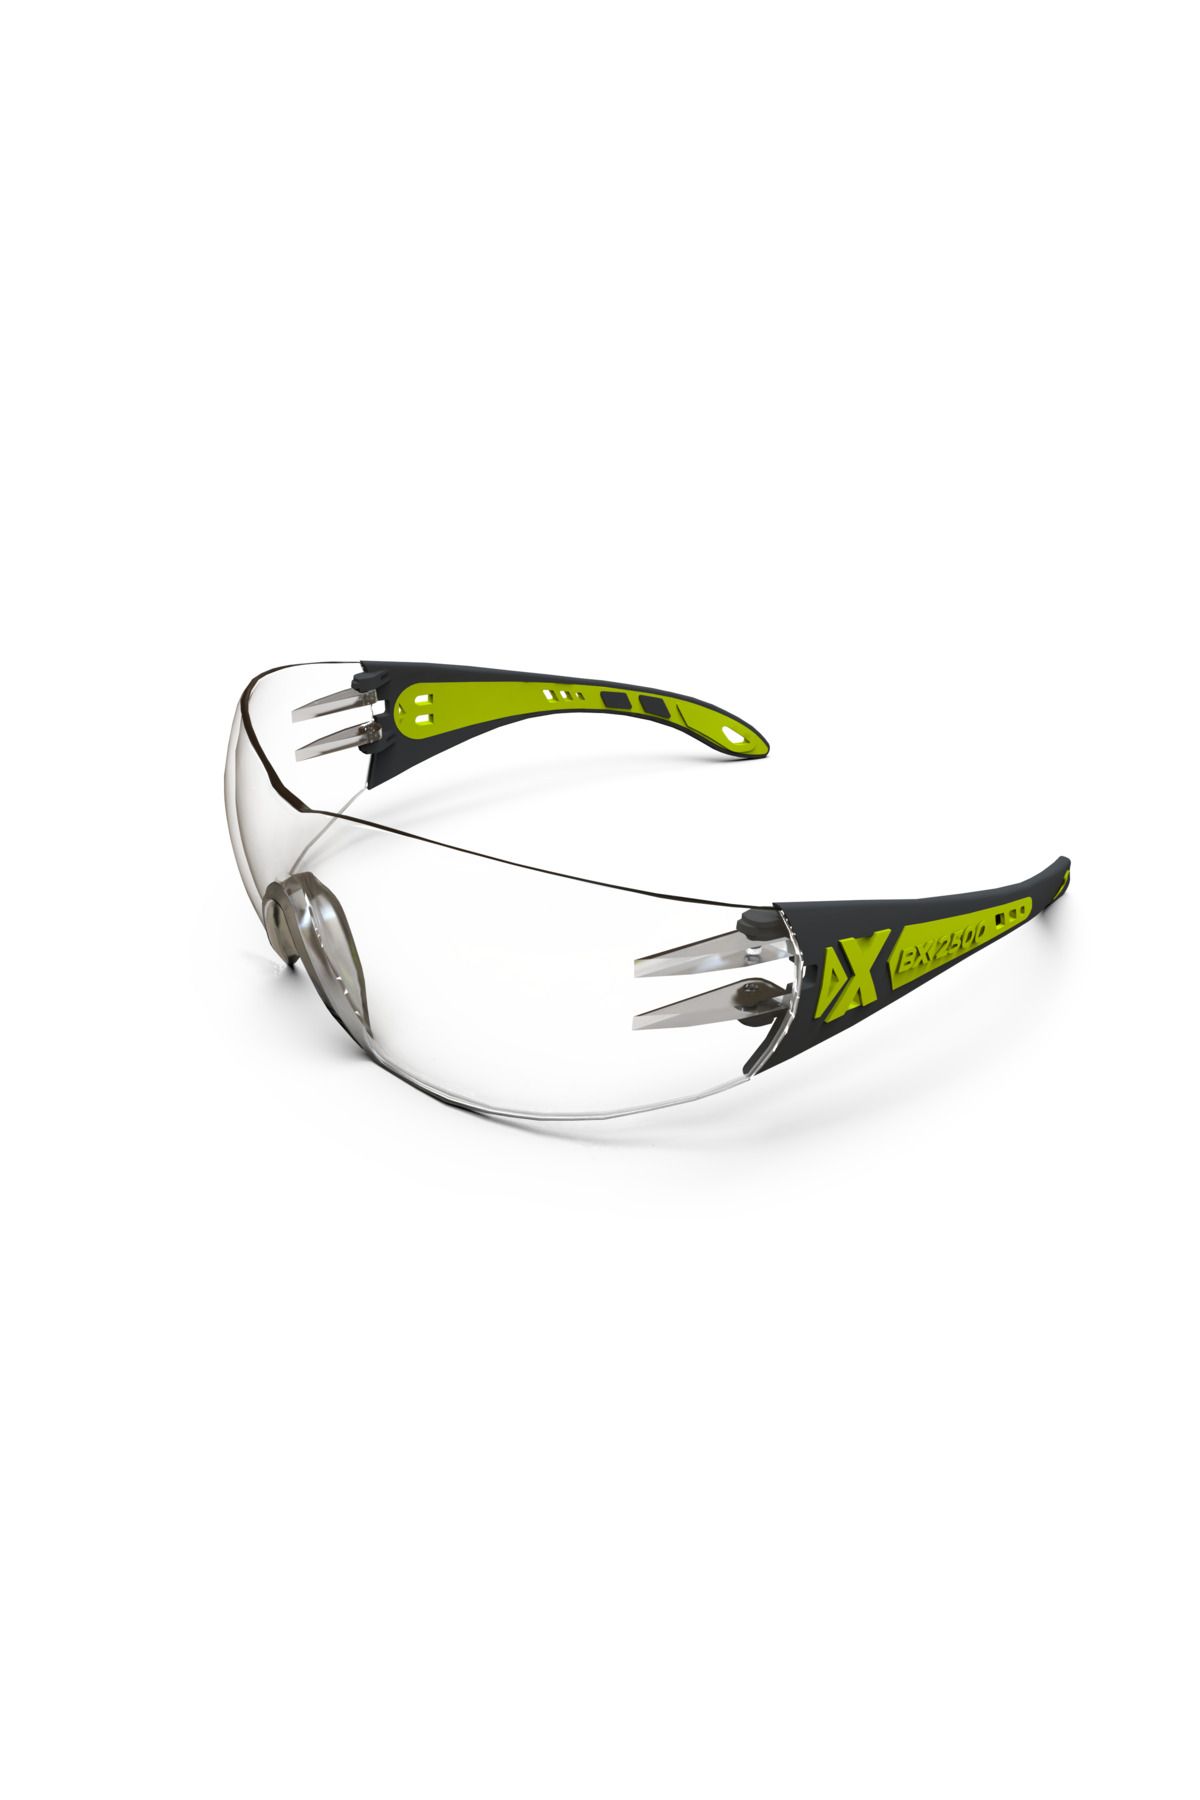 Baymax Koruyucu Gözlük Bx-2500 Solo Şeffaf (buğulanmaz) Antifog Iş Güvenliği Gözlüğü Çapak Gözlük